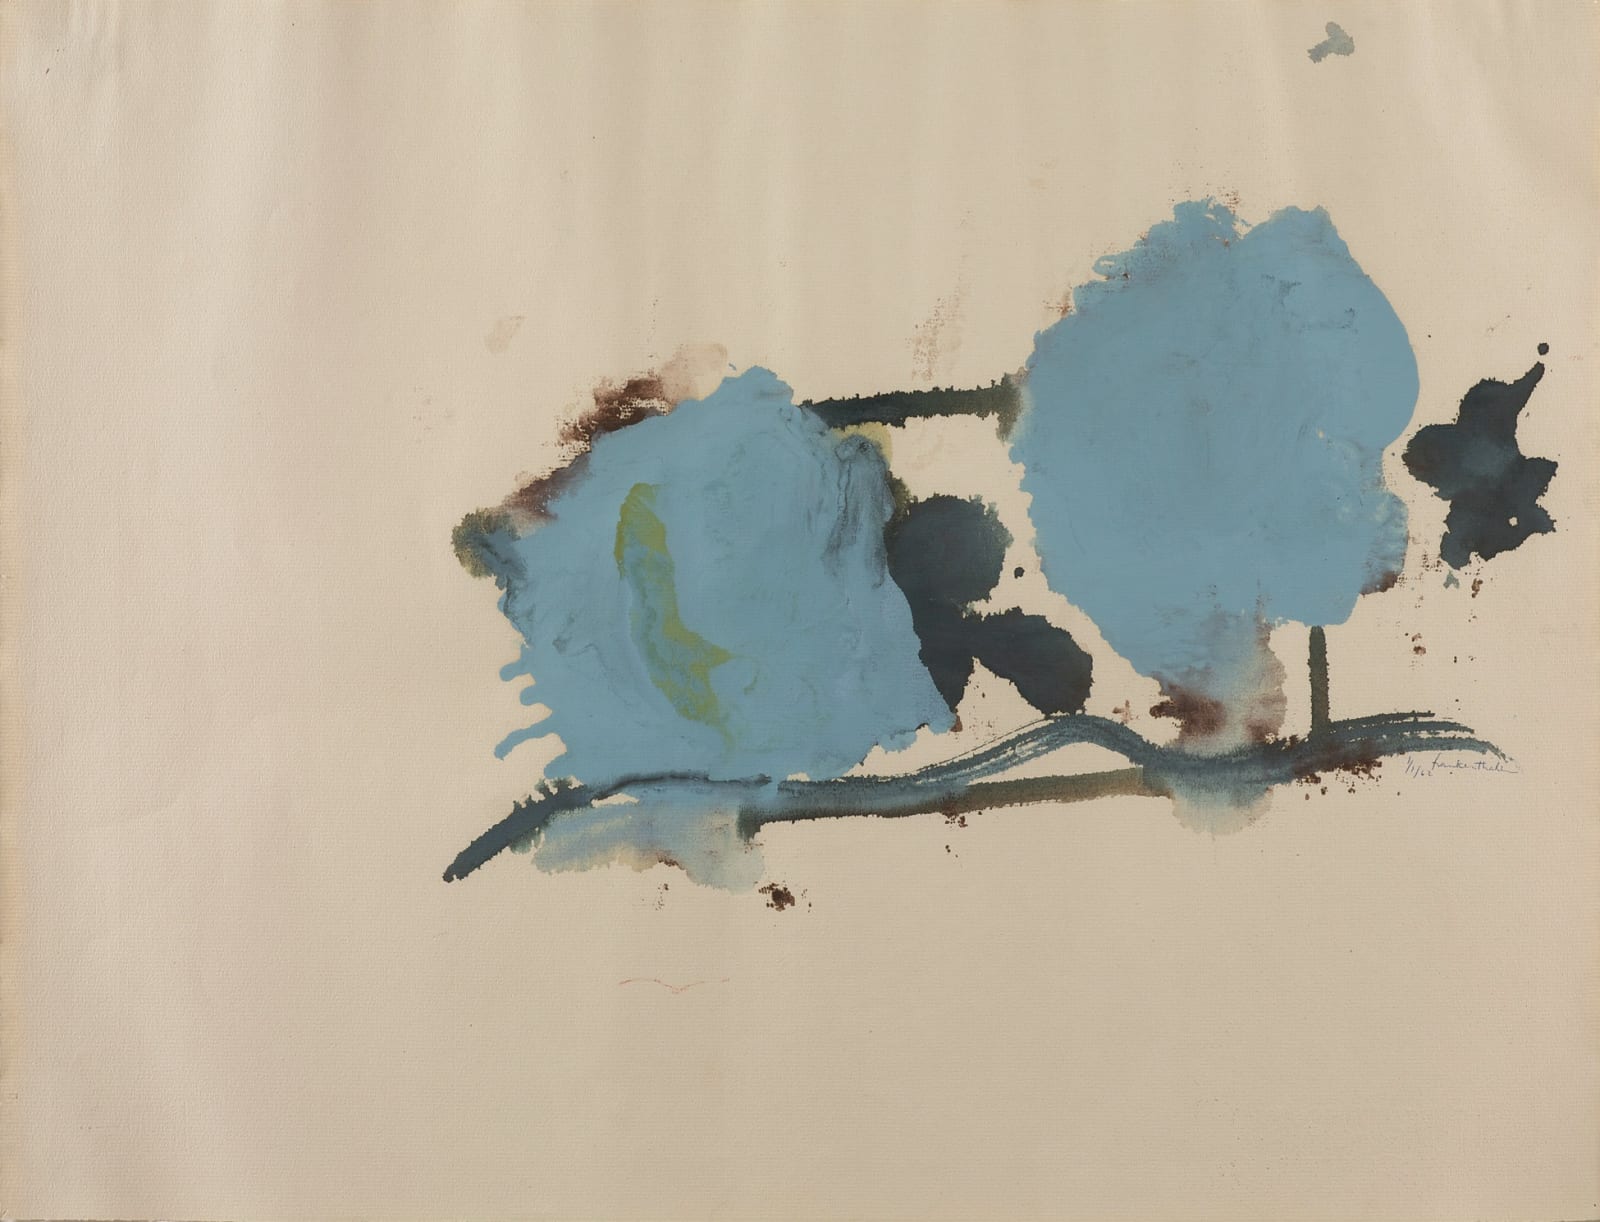 Helen Frankenthaler, Blue on One Side, 1962